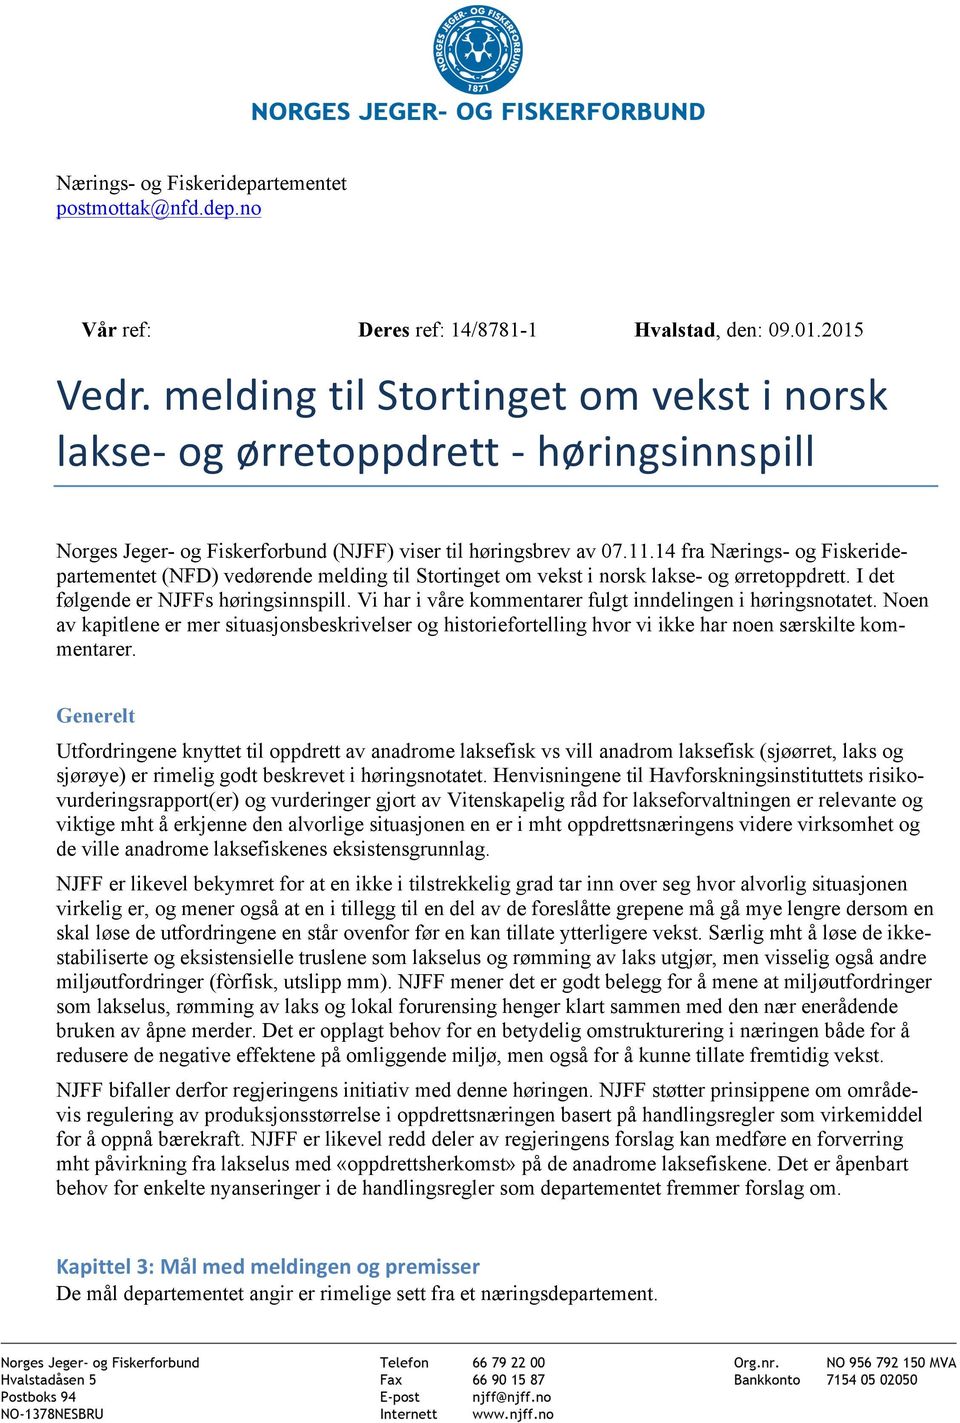 14 fra Nærings- og Fiskeridepartementet (NFD) vedørende melding til Stortinget om vekst i norsk lakse- og ørretoppdrett. I det følgende er NJFFs høringsinnspill.